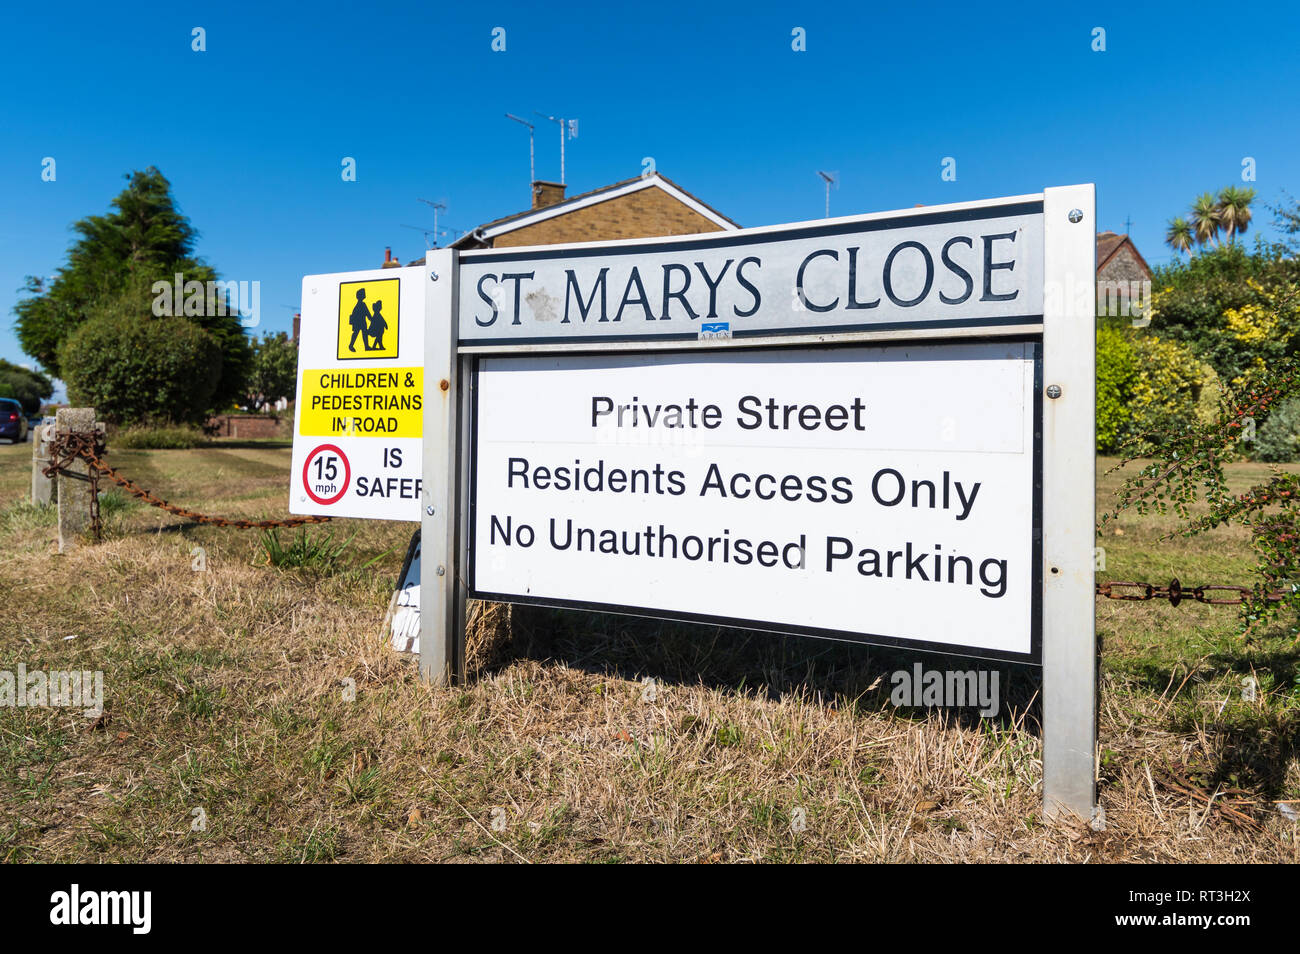 Le nom de la route britannique signe fixé dans le sol pour un proche, pour une route privée avec accès résidents seulement et pas de parking non autorisé, en Angleterre, UK. Banque D'Images